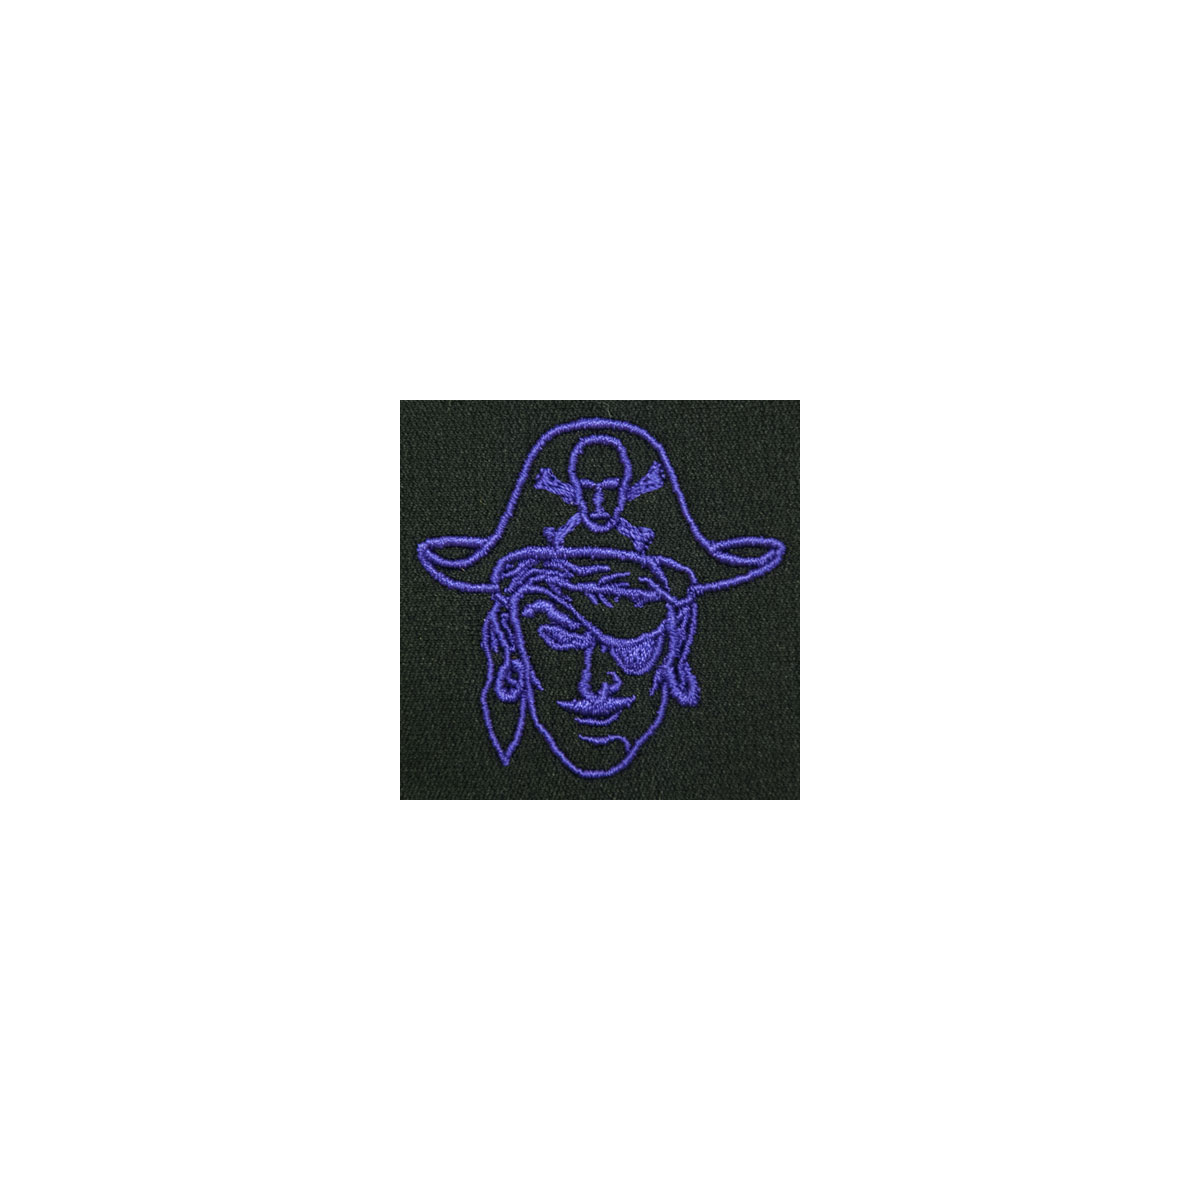 Pirate/Raider/Buccaneer Monogram Mascot (MM113)